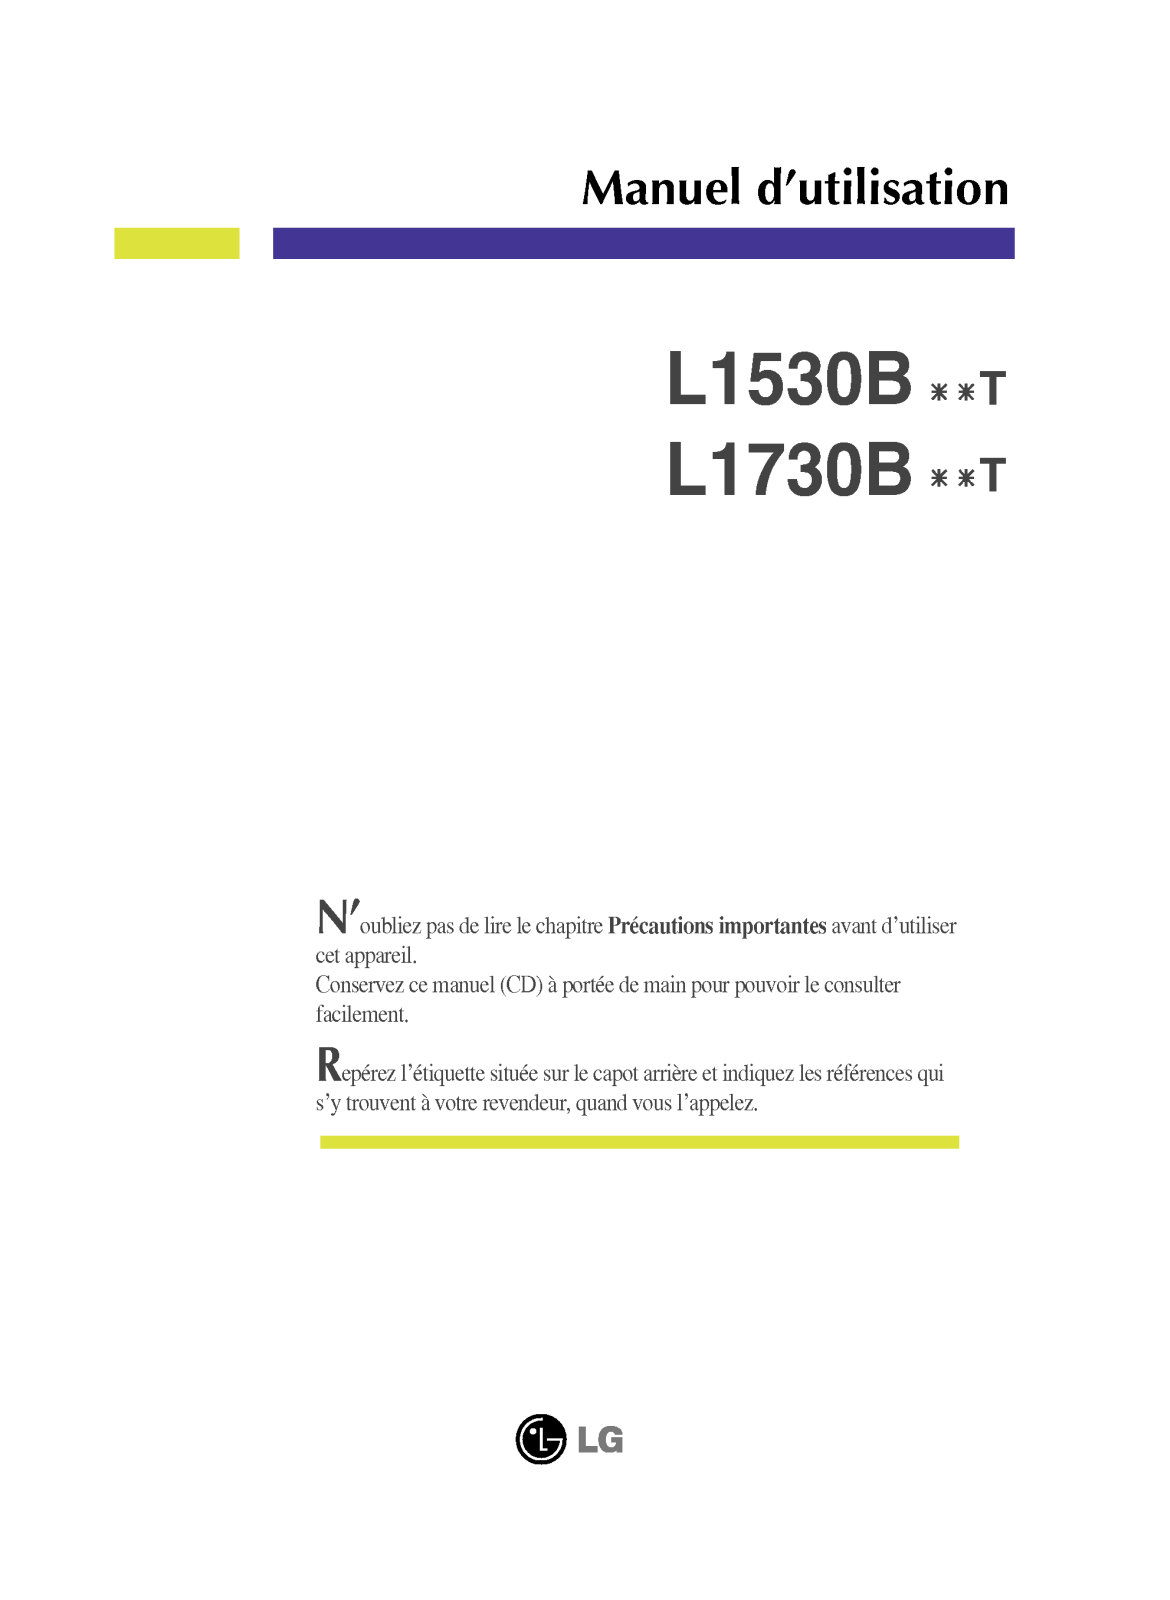 LG L1730BSNT User Manual